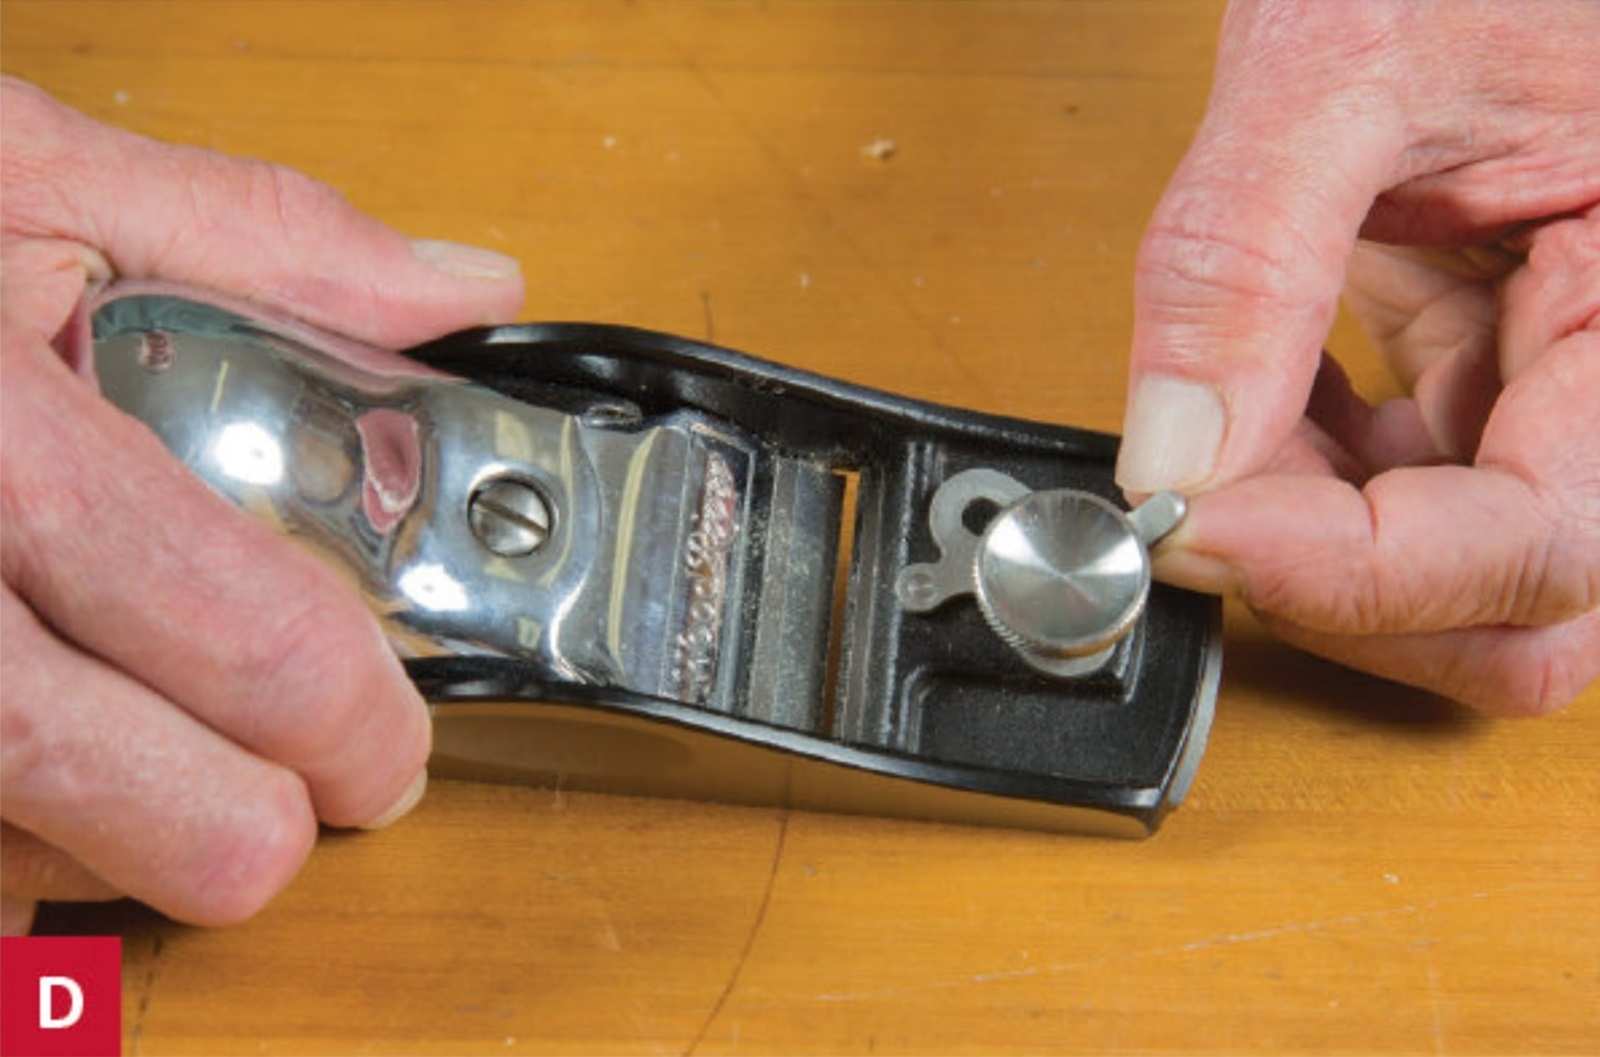 Để điều chỉnh rãnh cắt, hãy nới lỏng cần gạt và sau đó xoay núm xoay để điều chỉnh đóng hay mở rãnh cắt.